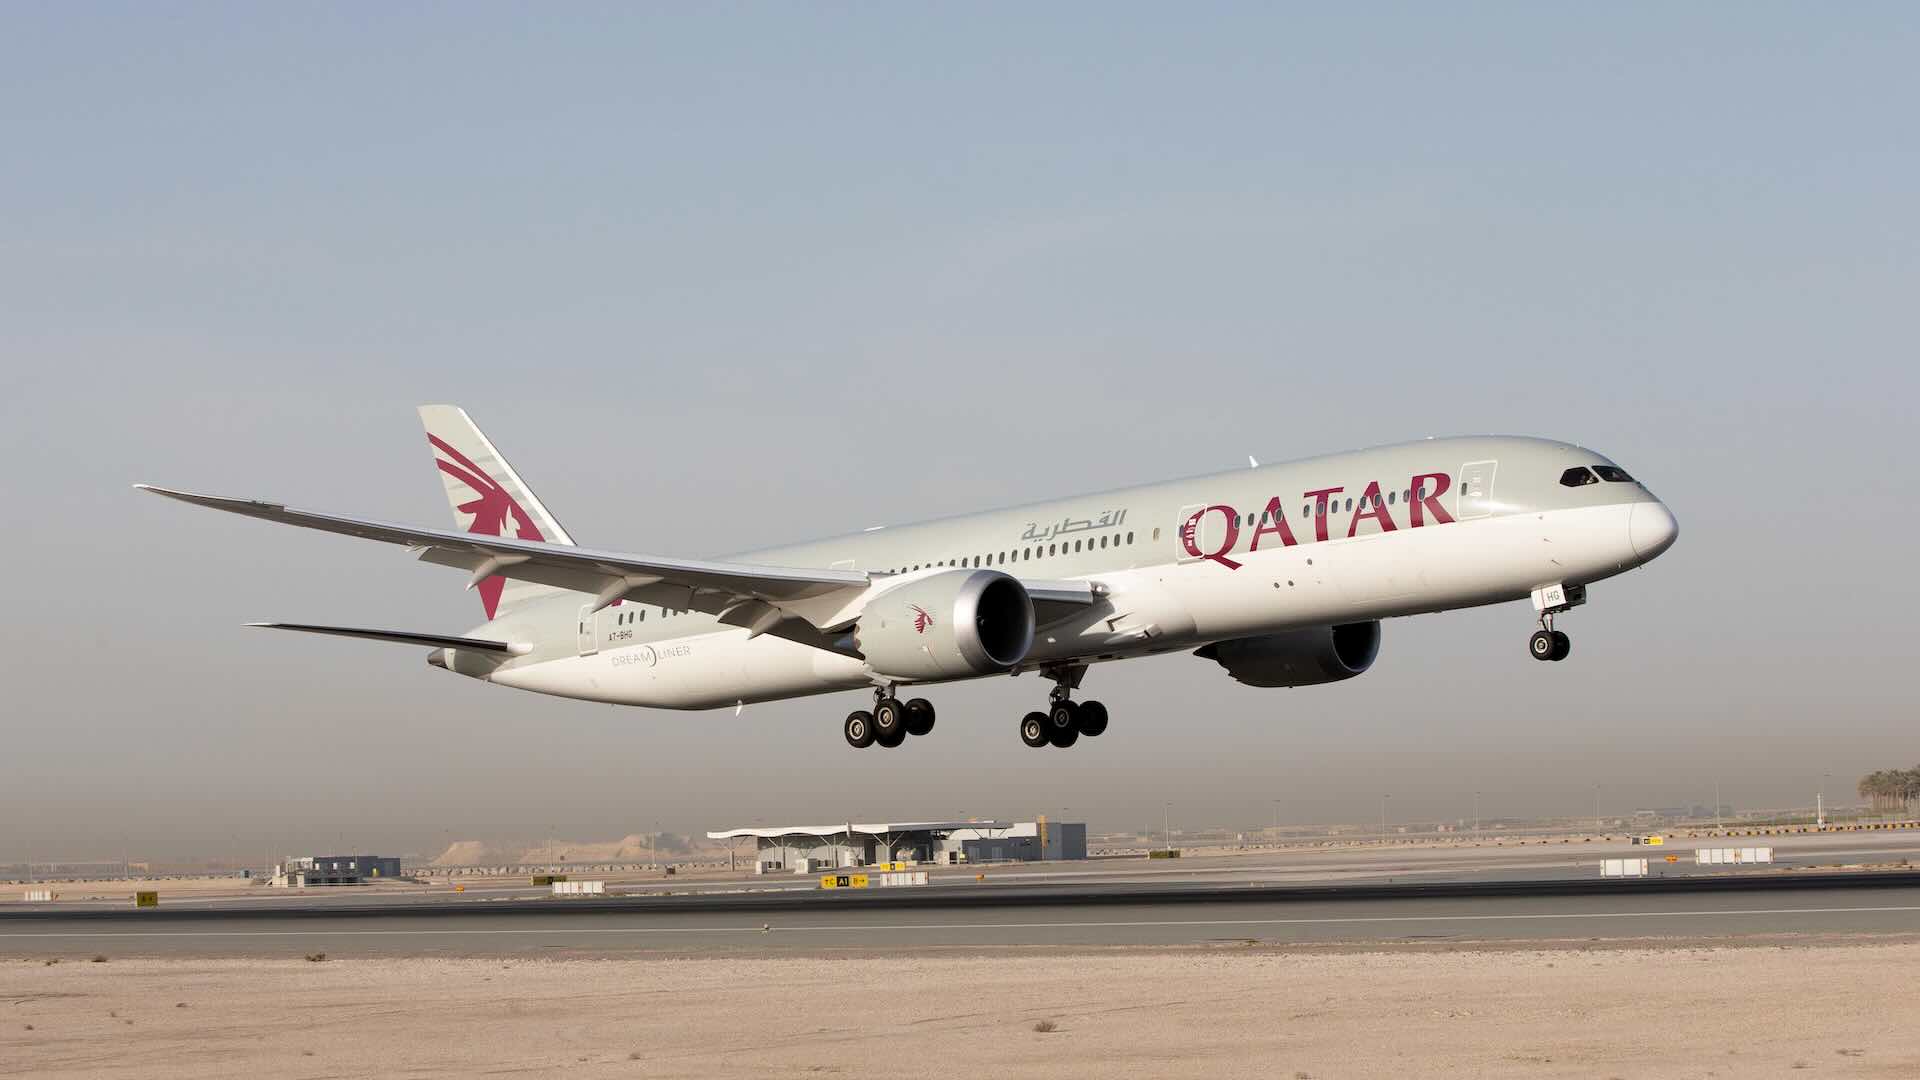 Qatar Airways offerte voli esclusive da Venezia